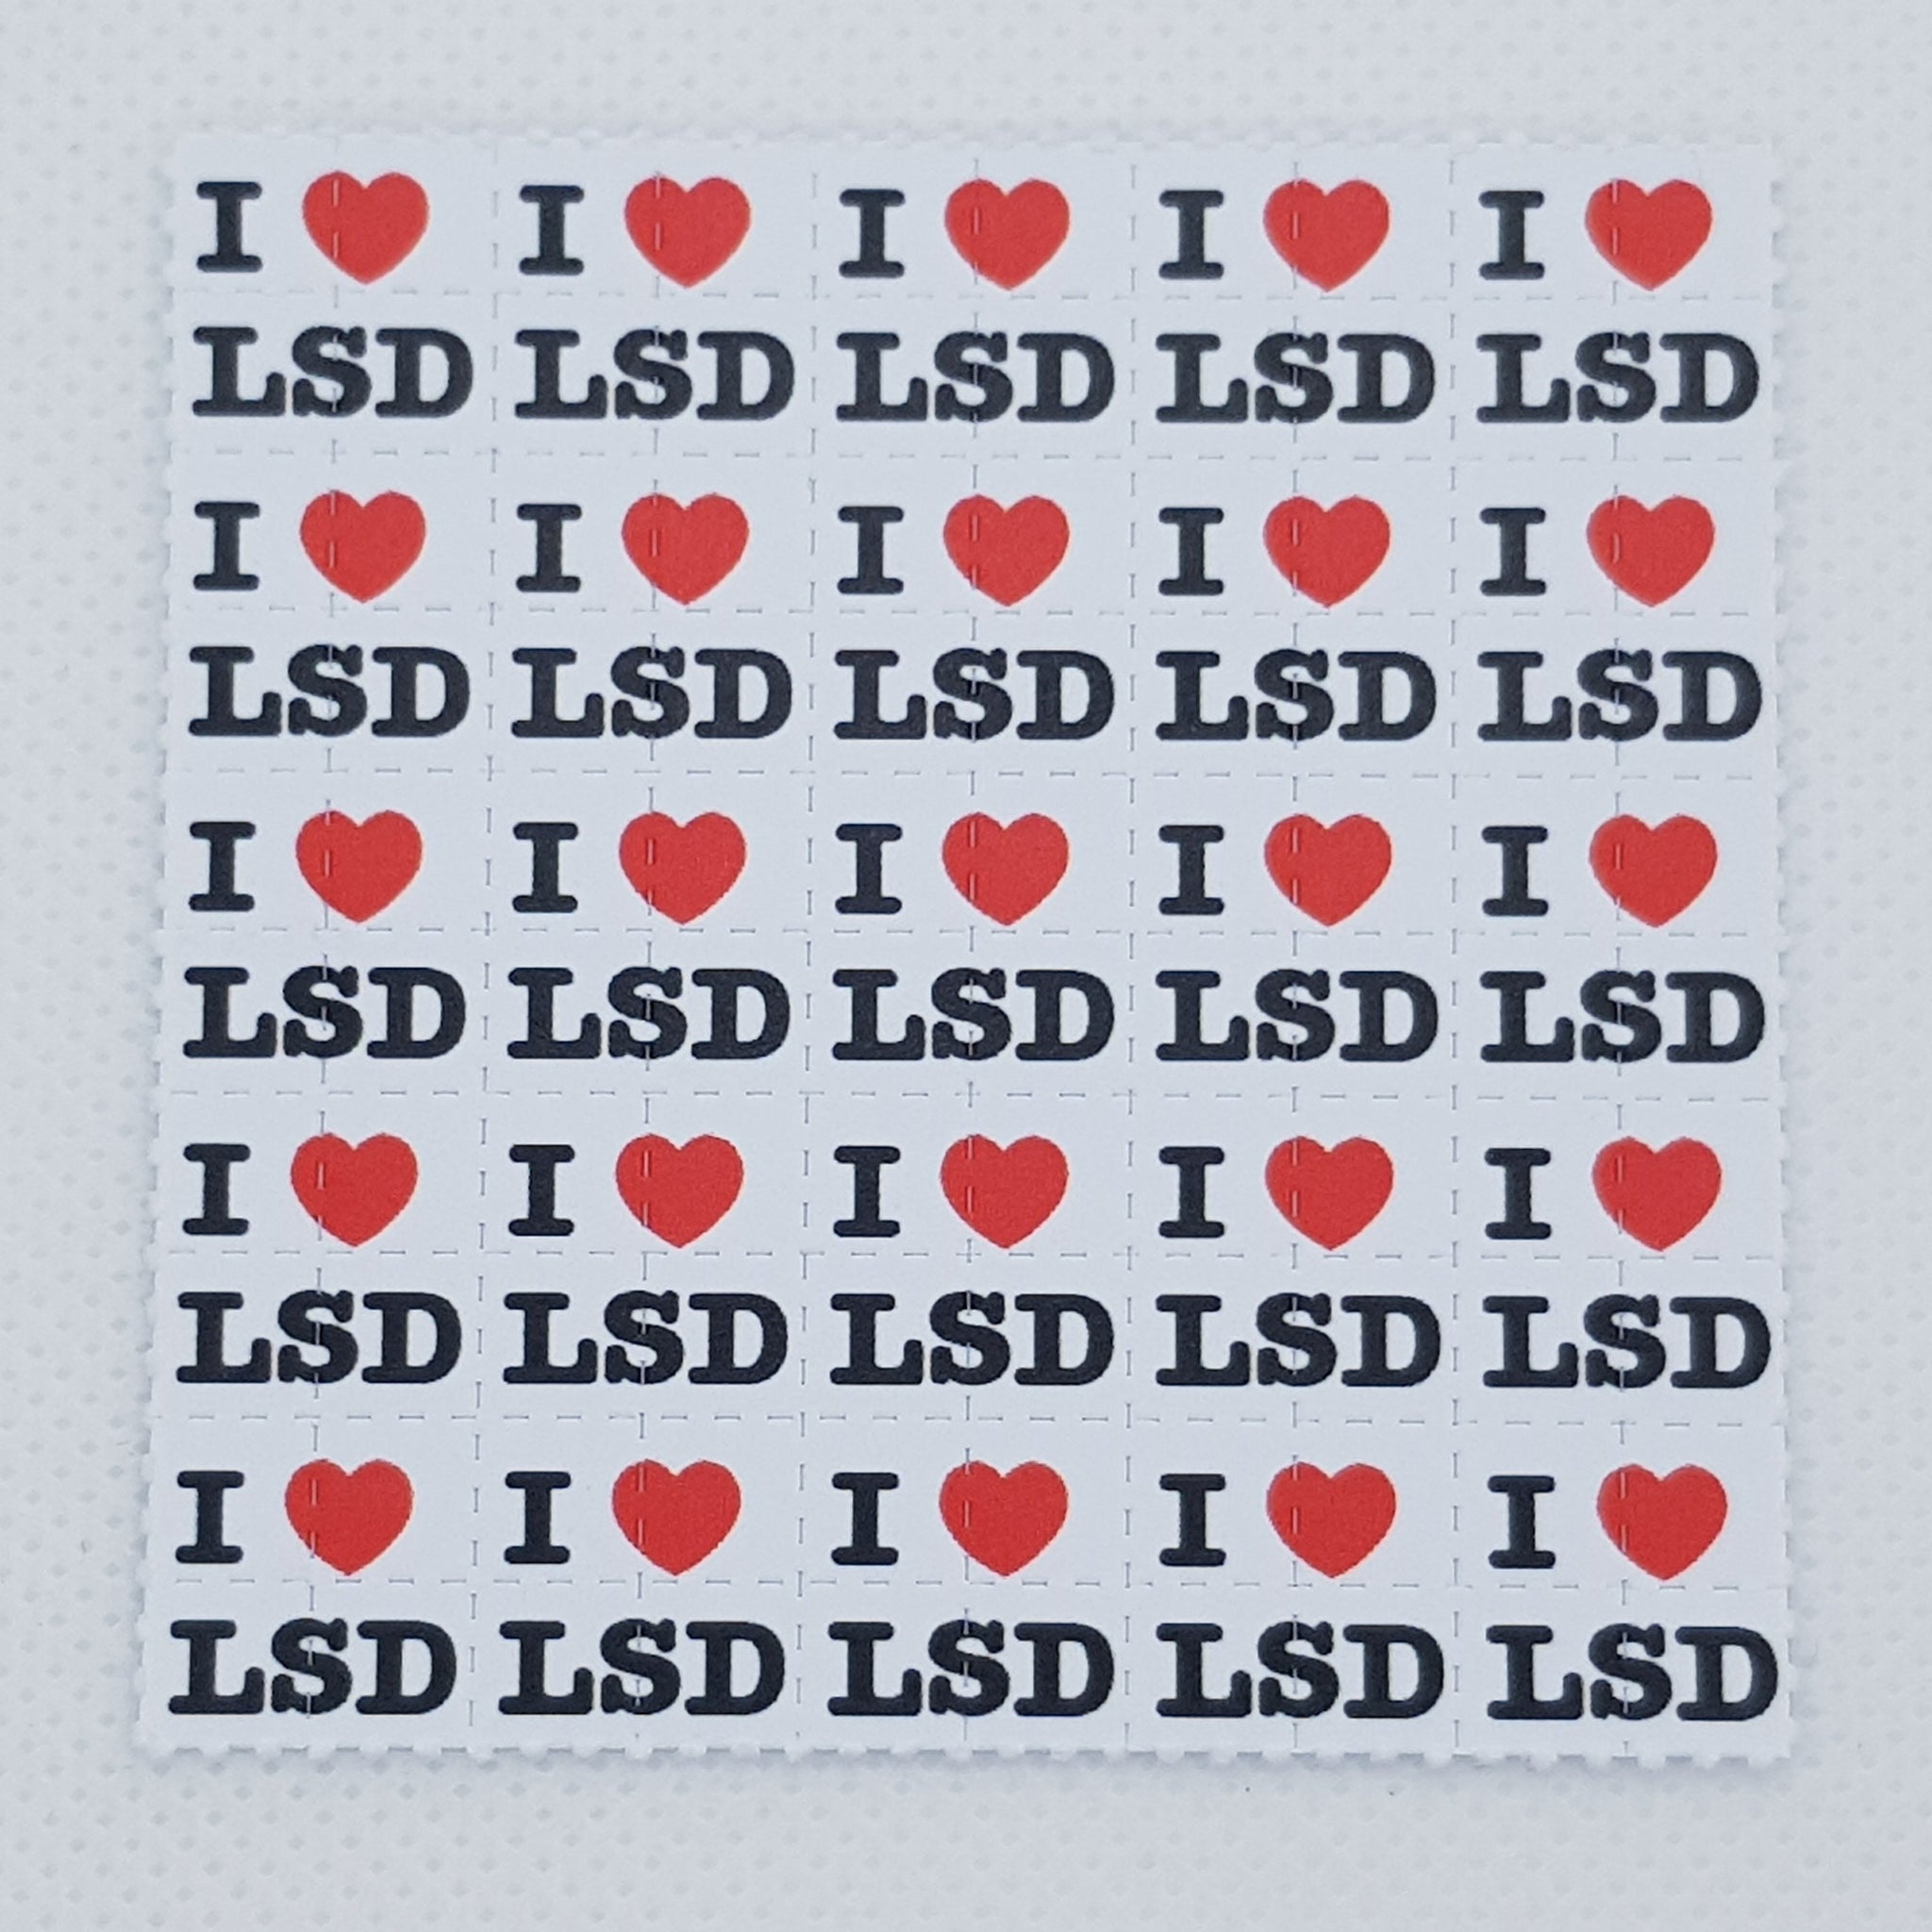 LSD Blotter Art Acid Paper